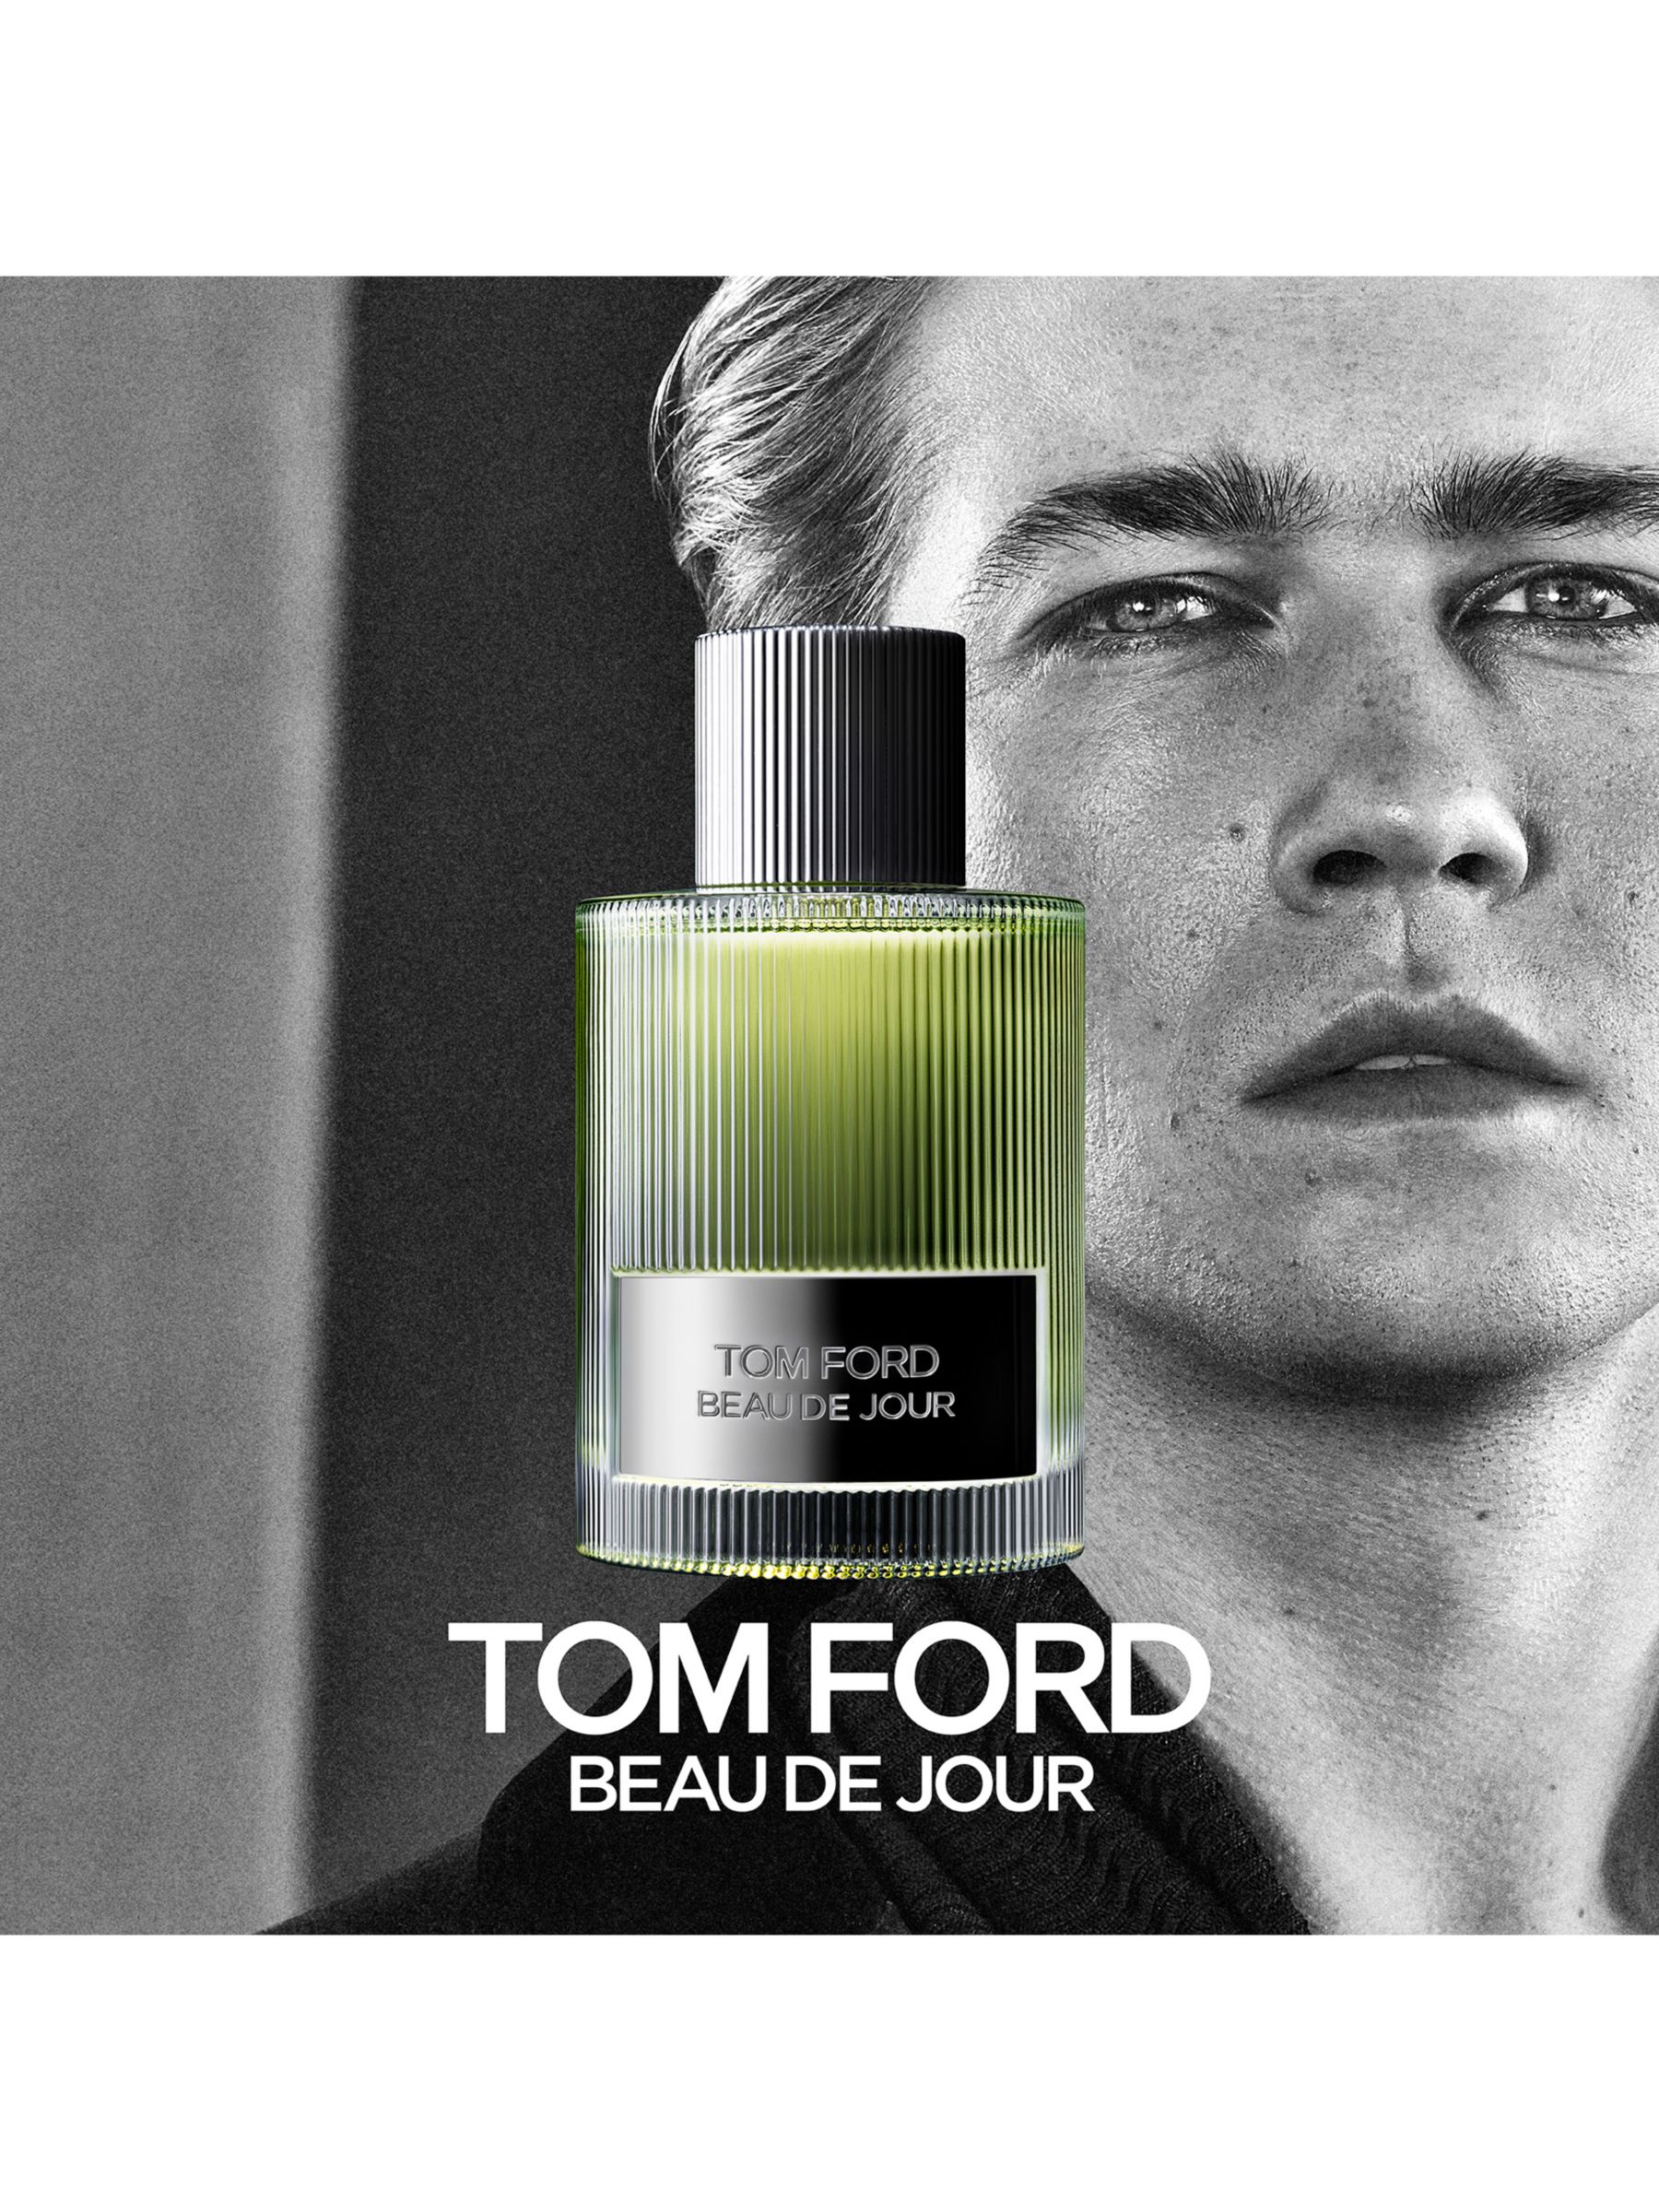 TOM FORD Beau De Jour Eau de Parfum, 50ml at John Lewis & Partners